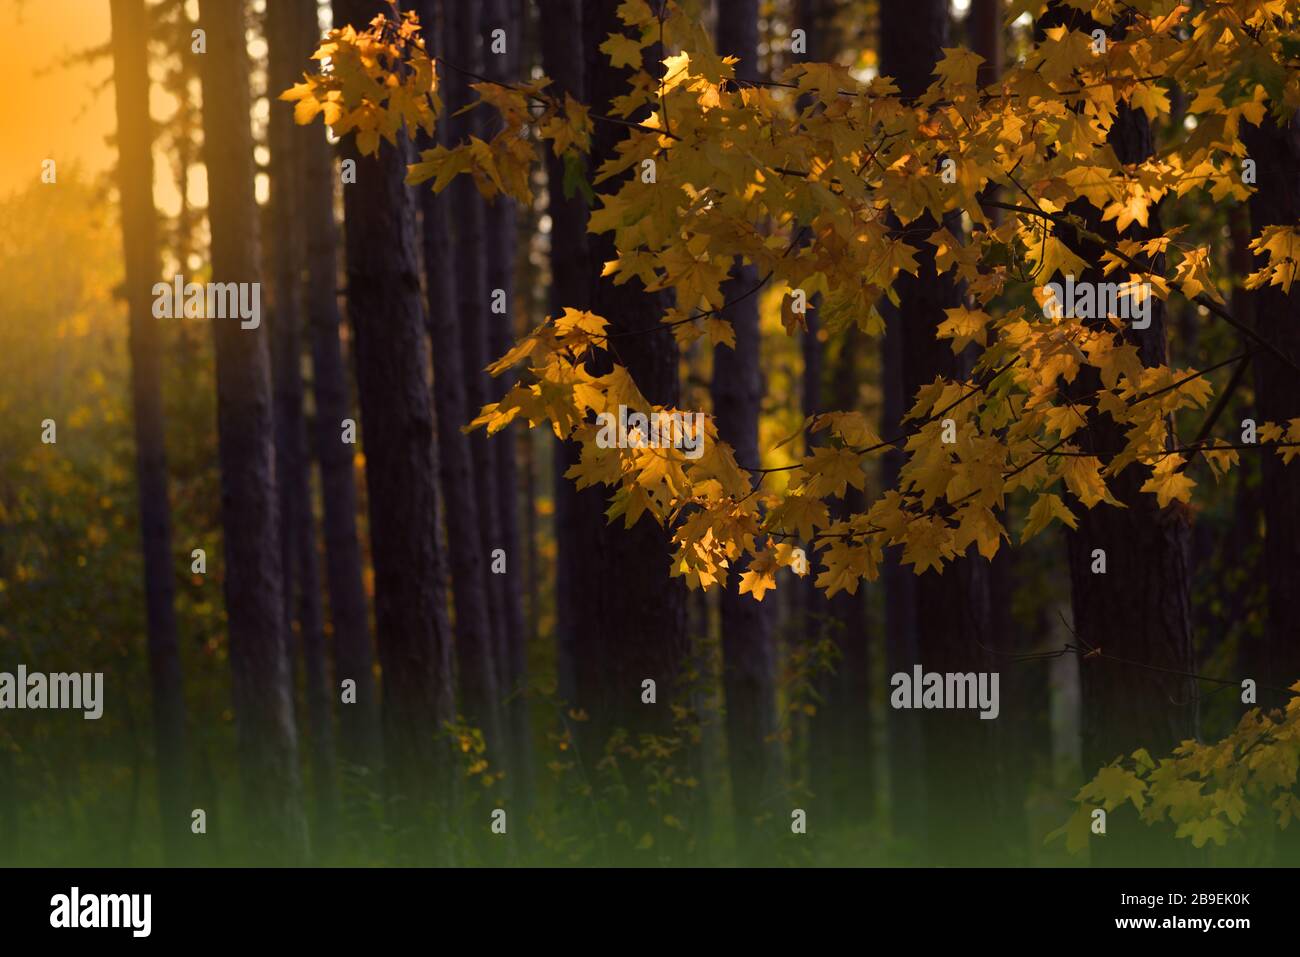 Natur Hintergrund.Herbst Landschaft.Herbst Szene.schöne Herbstpark mit bunten hellen Blättern und Bäumen.Schönheit Natur Szene.Foggy Wald.Fantasie. Stockfoto